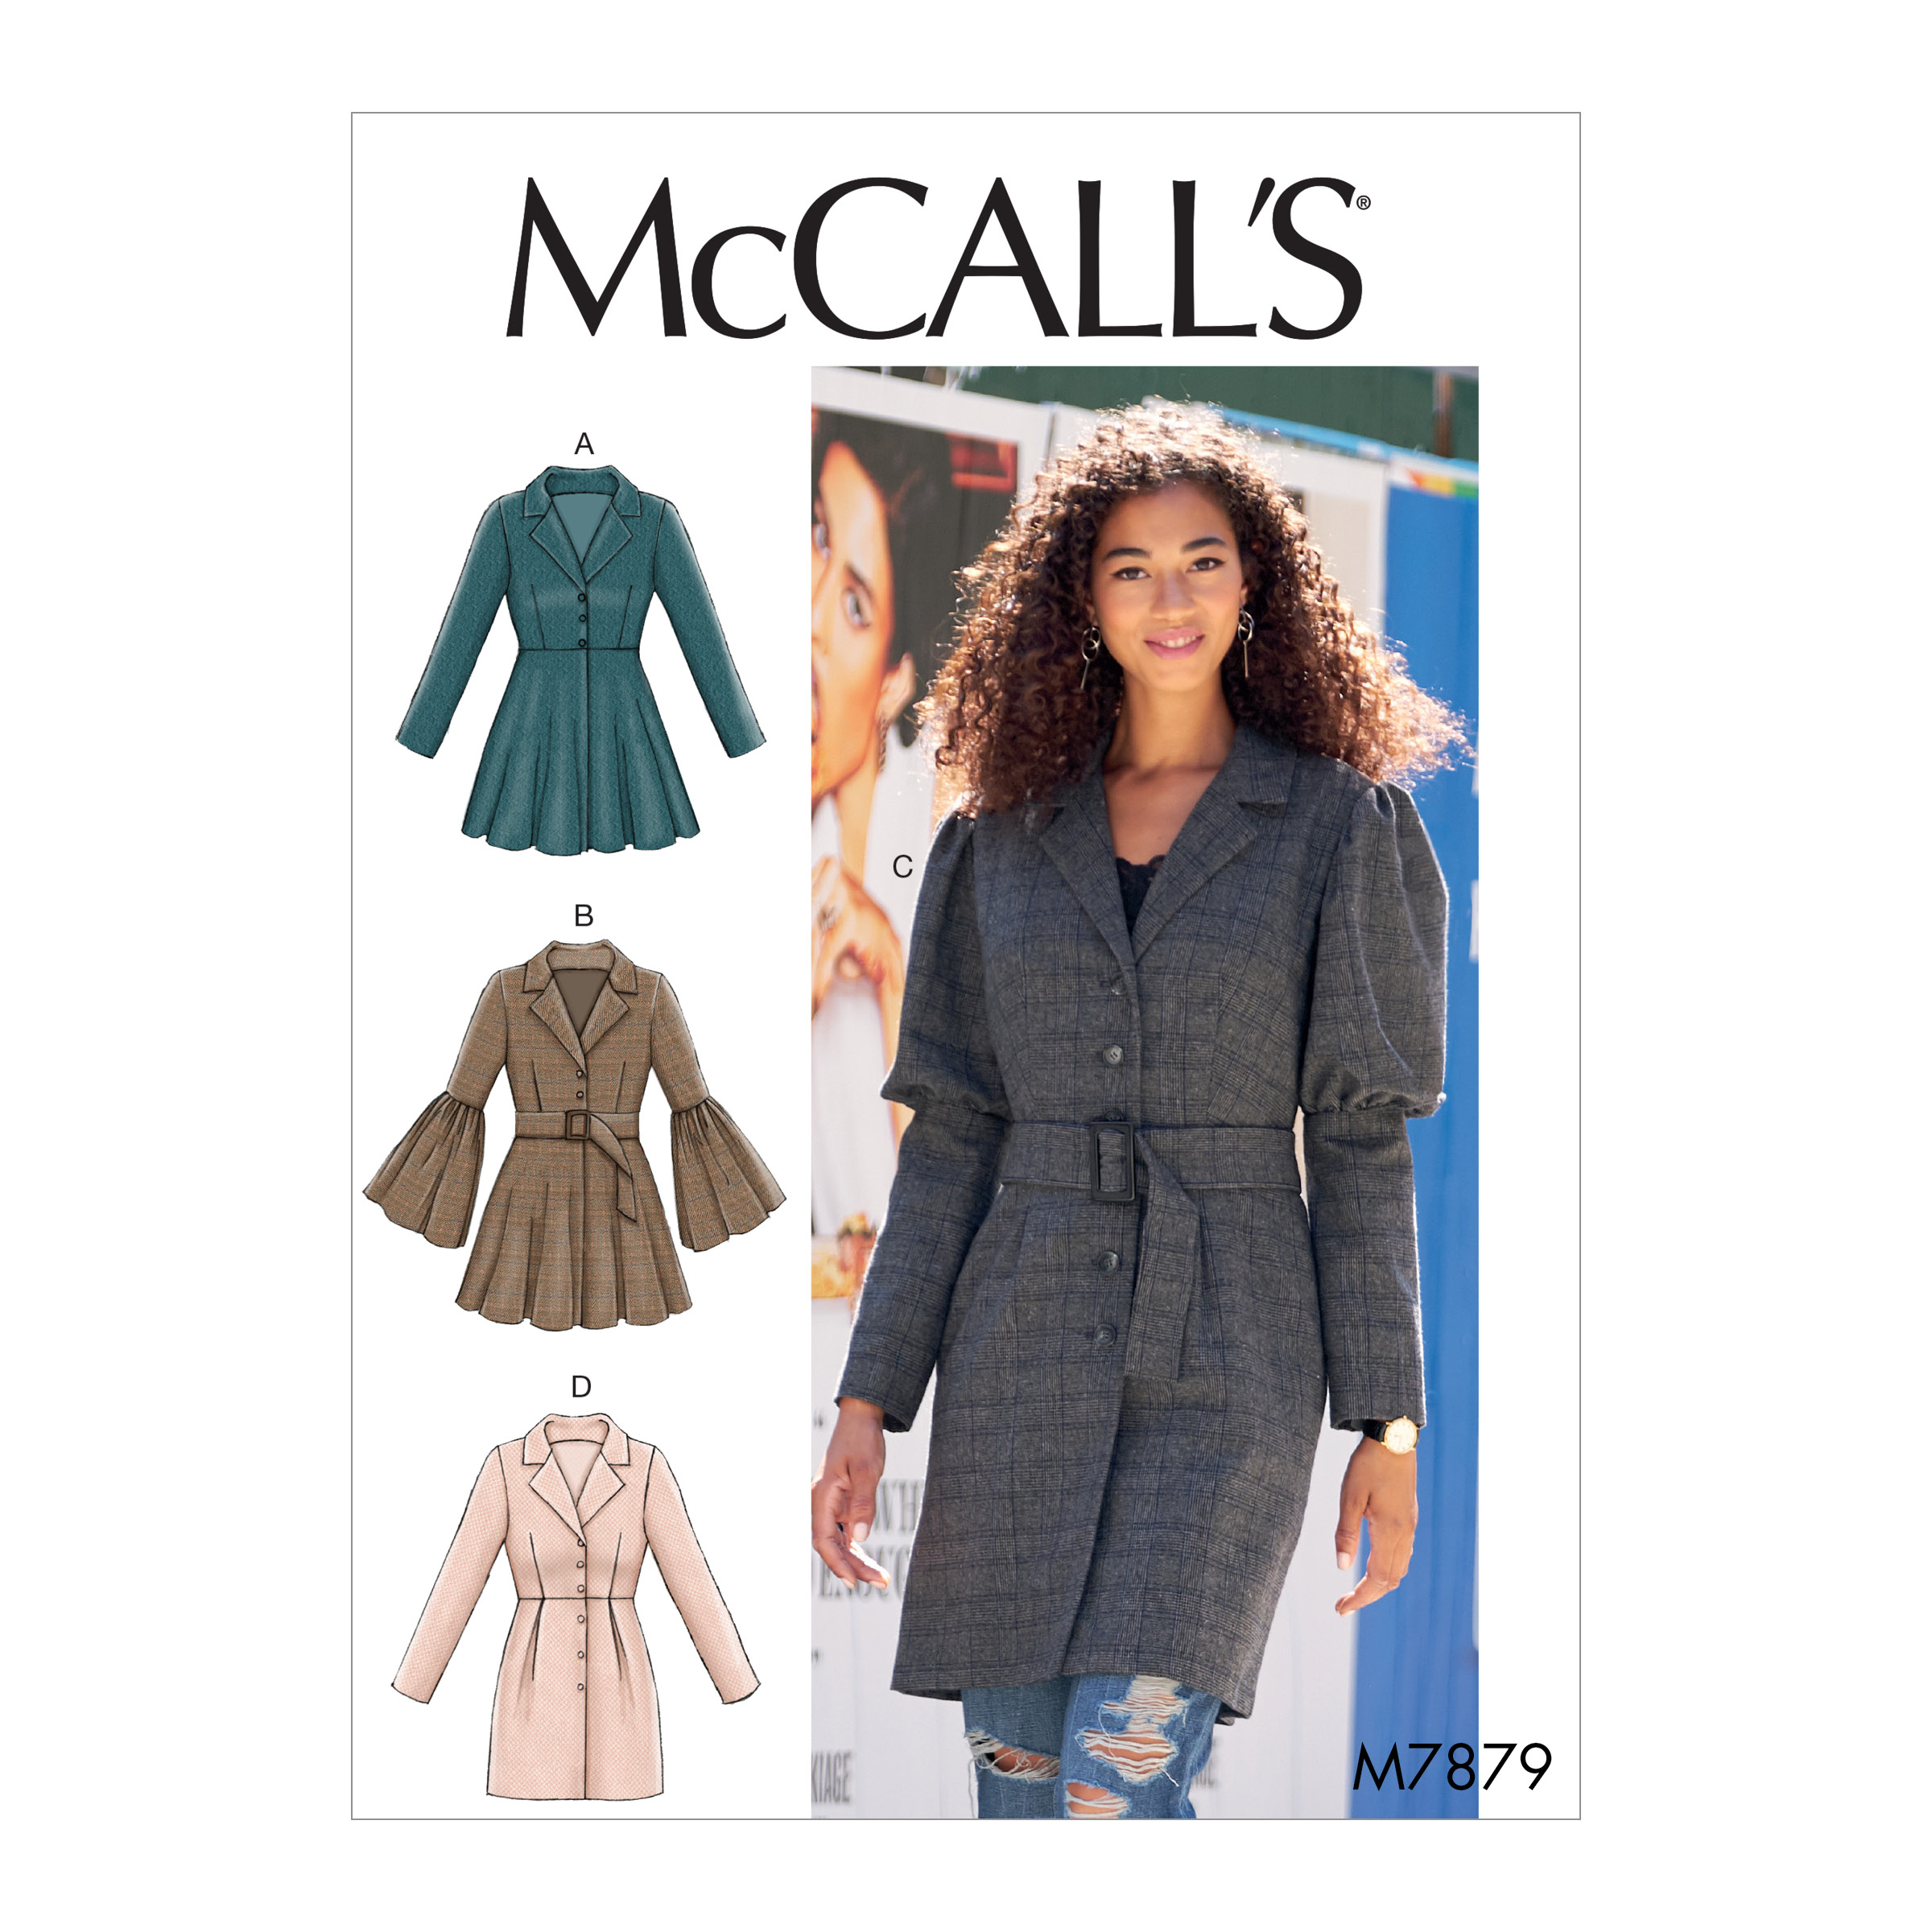 McCall's 7879 Misses' Coats